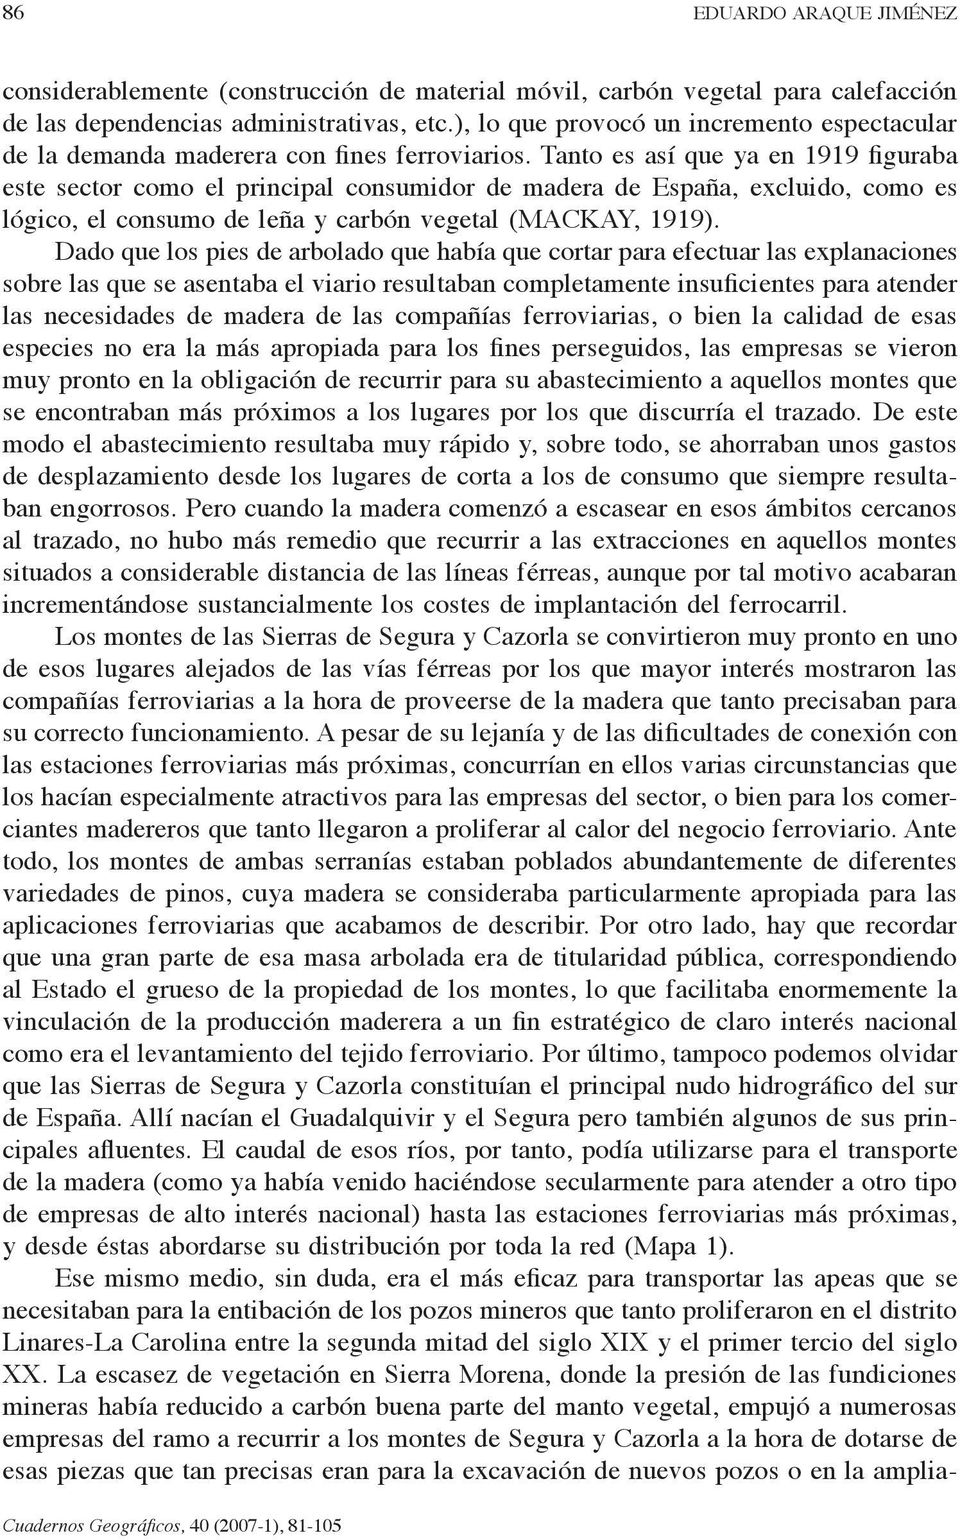 Tanto es así que ya en 1919 figuraba este sector como el principal consumidor de madera de España, excluido, como es lógico, el consumo de leña y carbón vegetal (MACKAY, 1919).